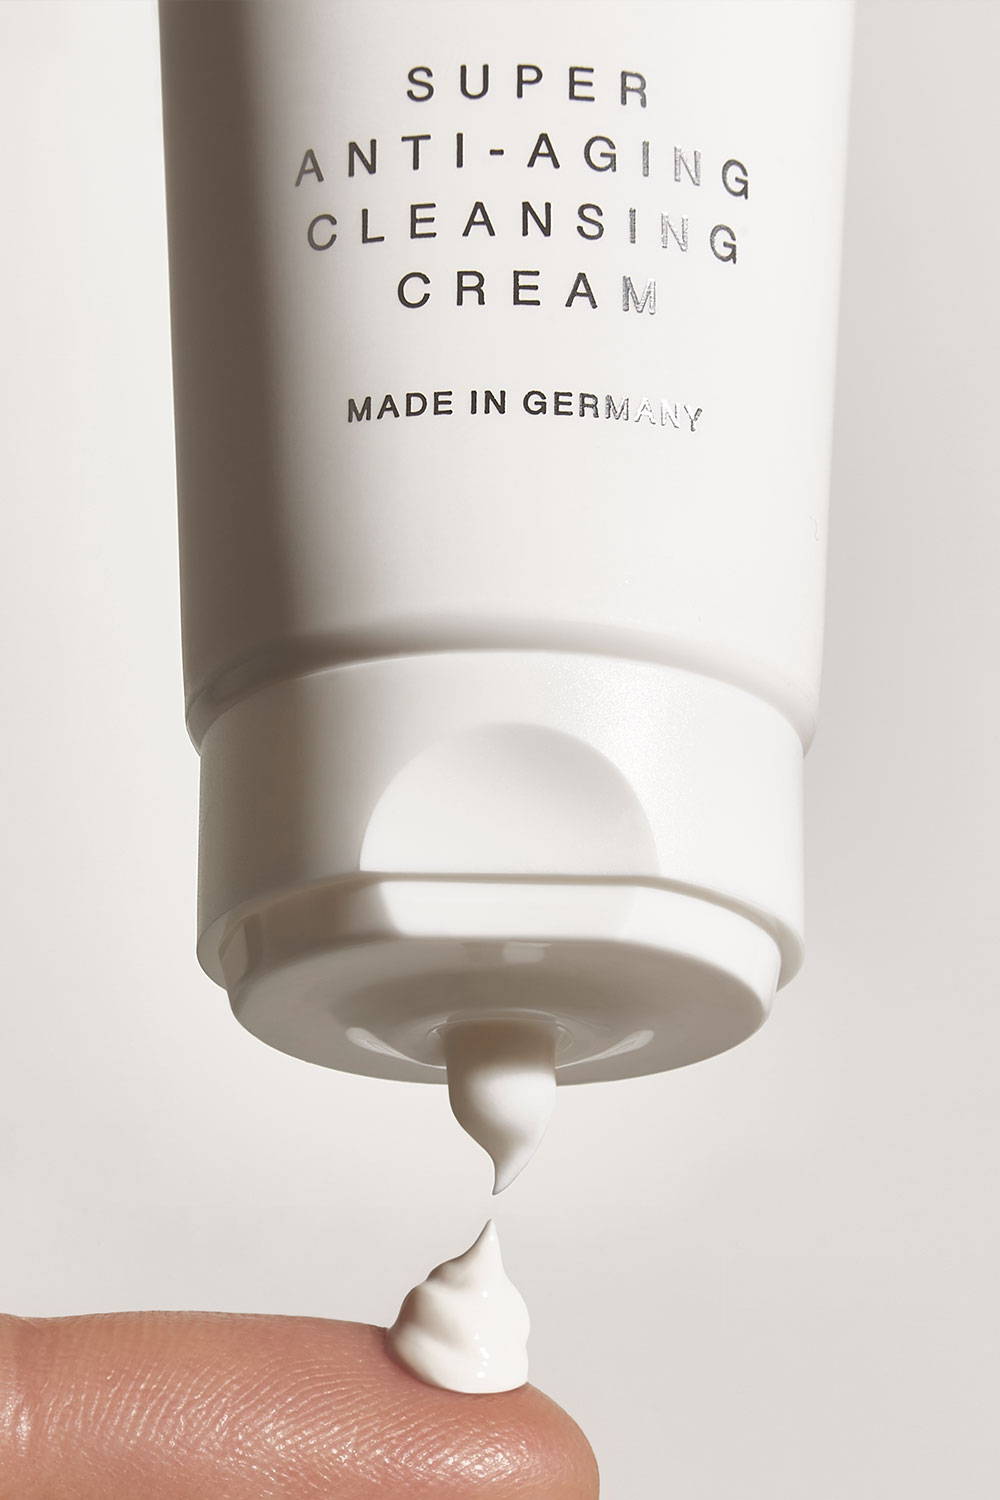 Super anti-aging cleansing cream